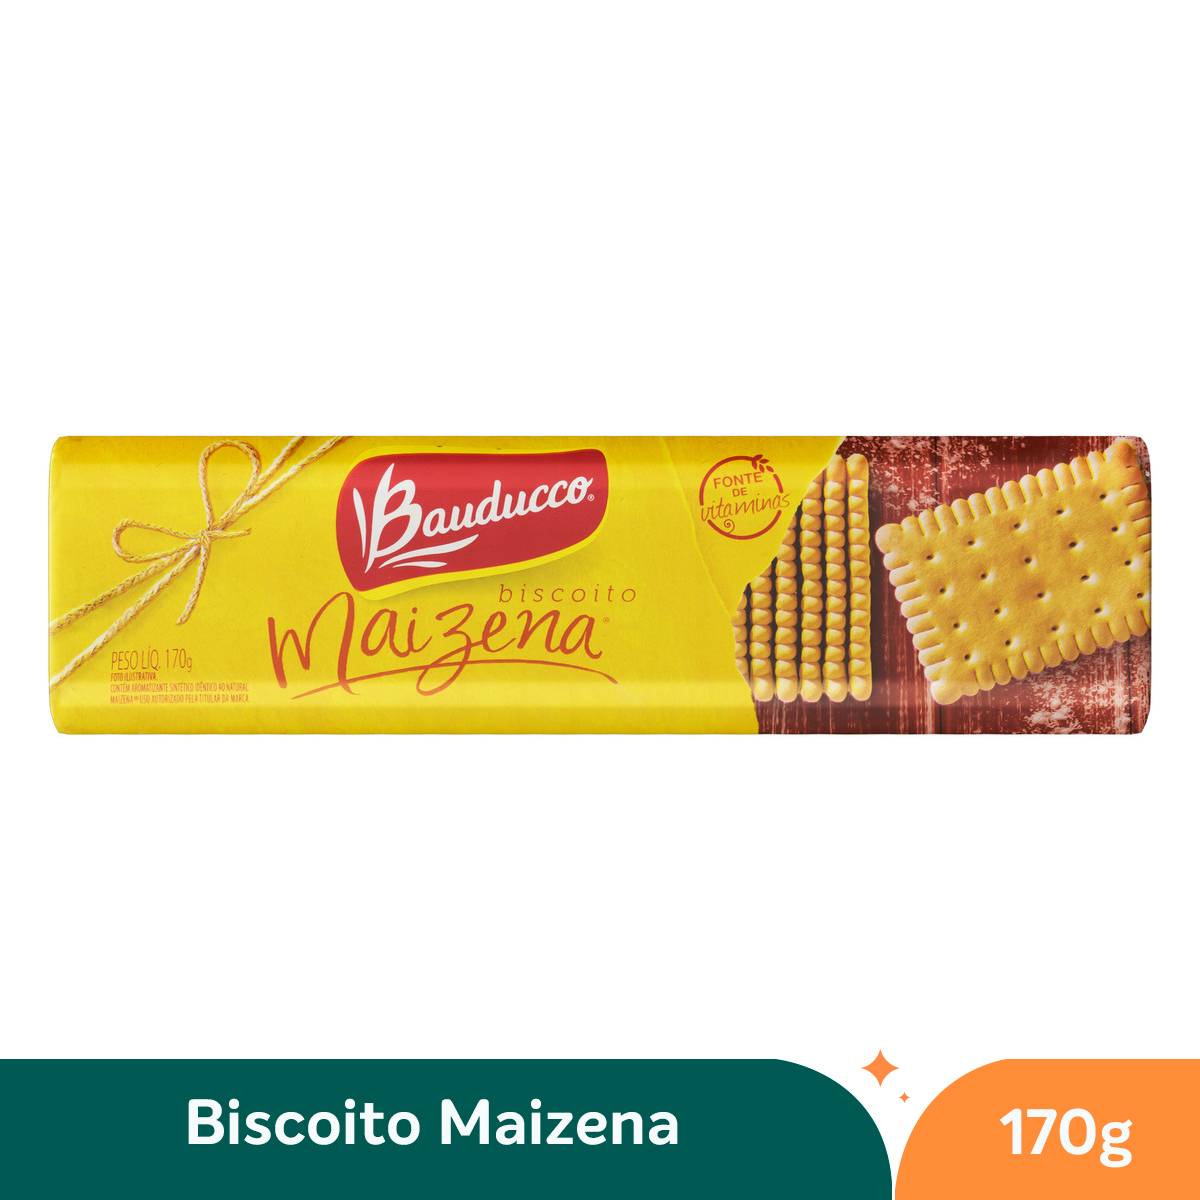 Biscoito Maizena Bauducco - 170g